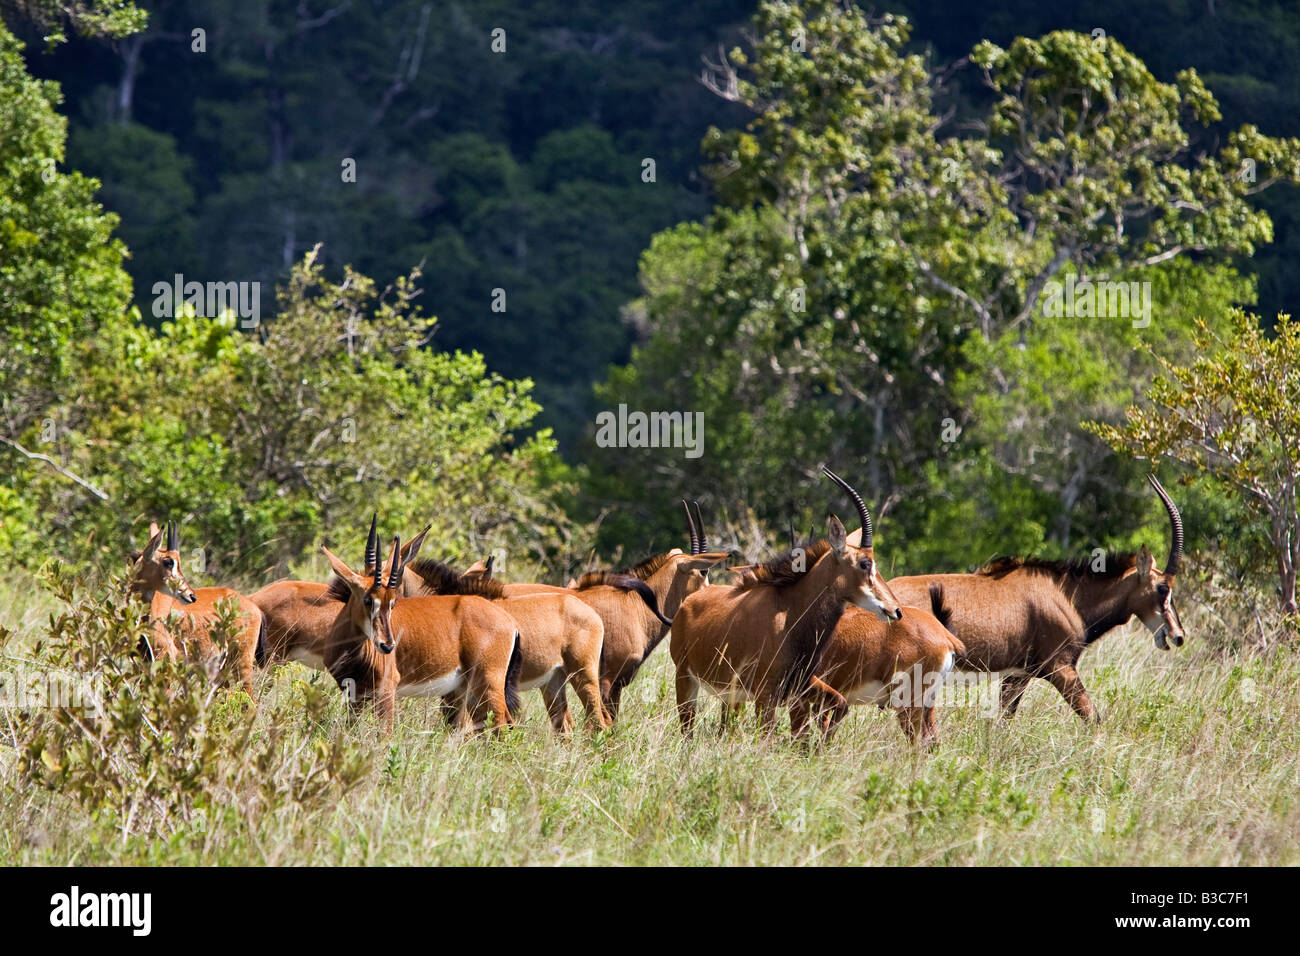 Kenya, district de Kwale, Shimba Hills. Un troupeau d'hippotrague (Hippotragus niger) dans les collines de Shimba, au sud de Mombasa. Cette population de Sable est classé en danger par l'UICN. Banque D'Images